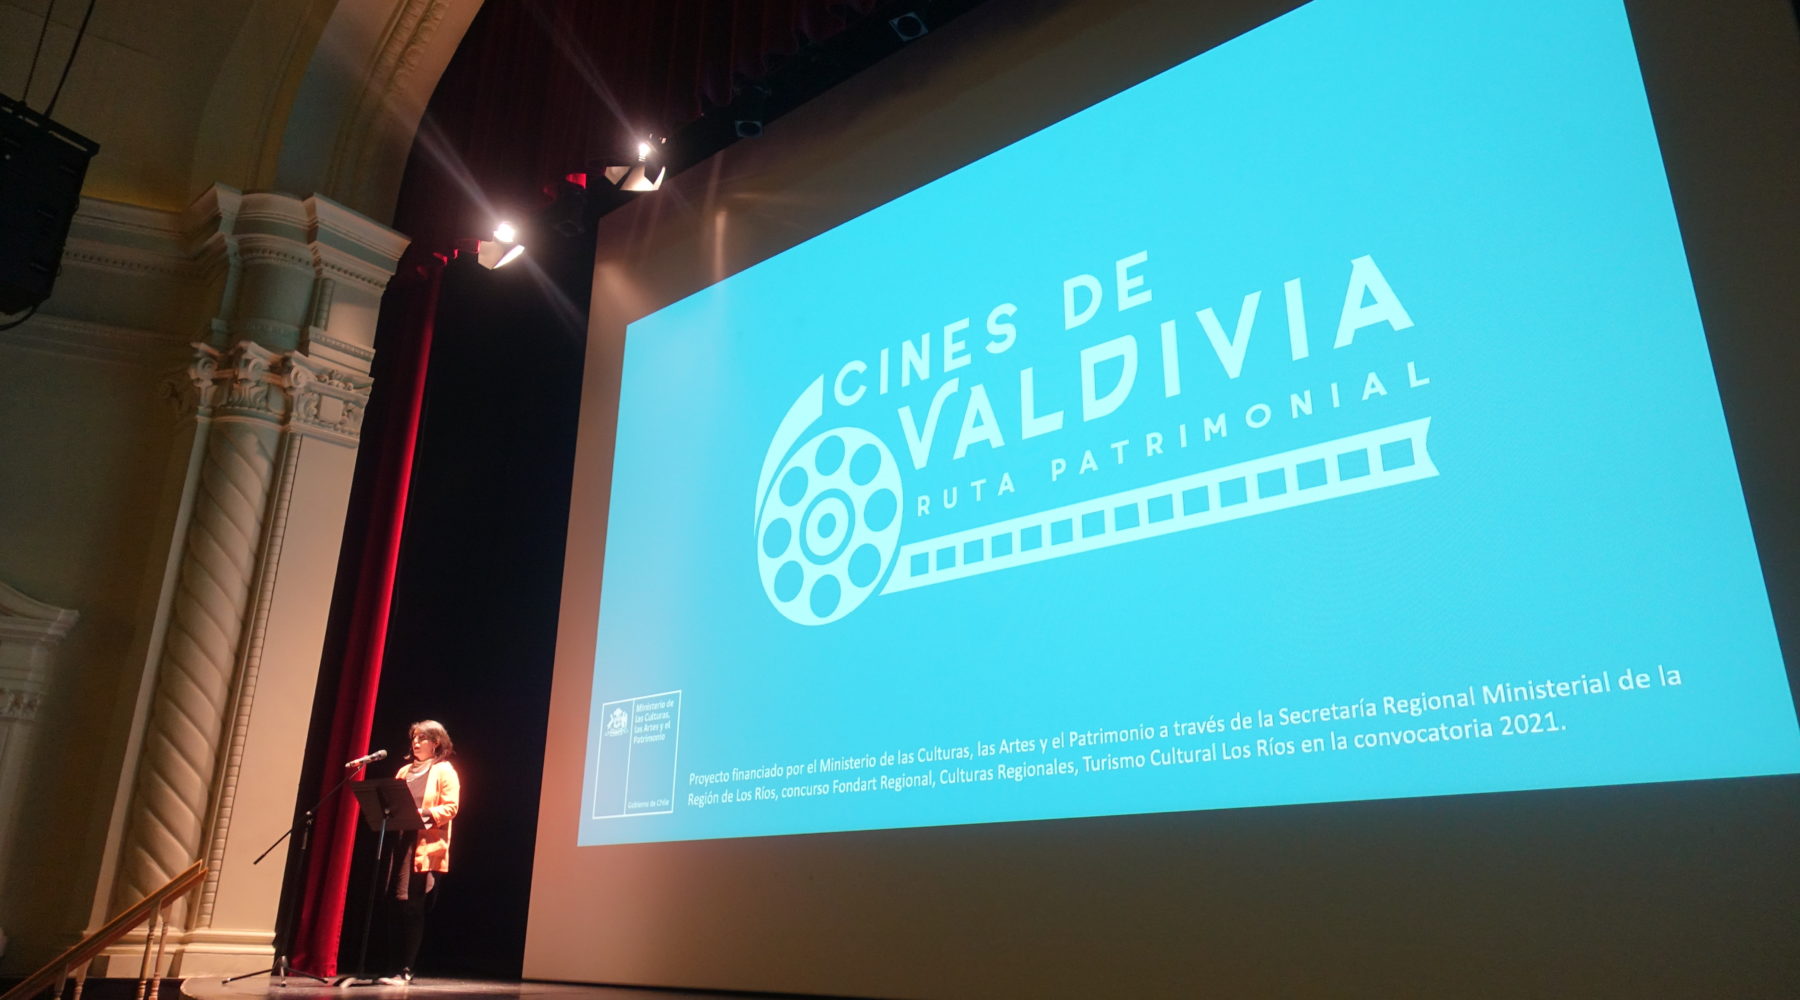 Teatro Regional Cervantes: efectuaron lanzamiento de la Ruta Patrimonial de Cines Valdiviano